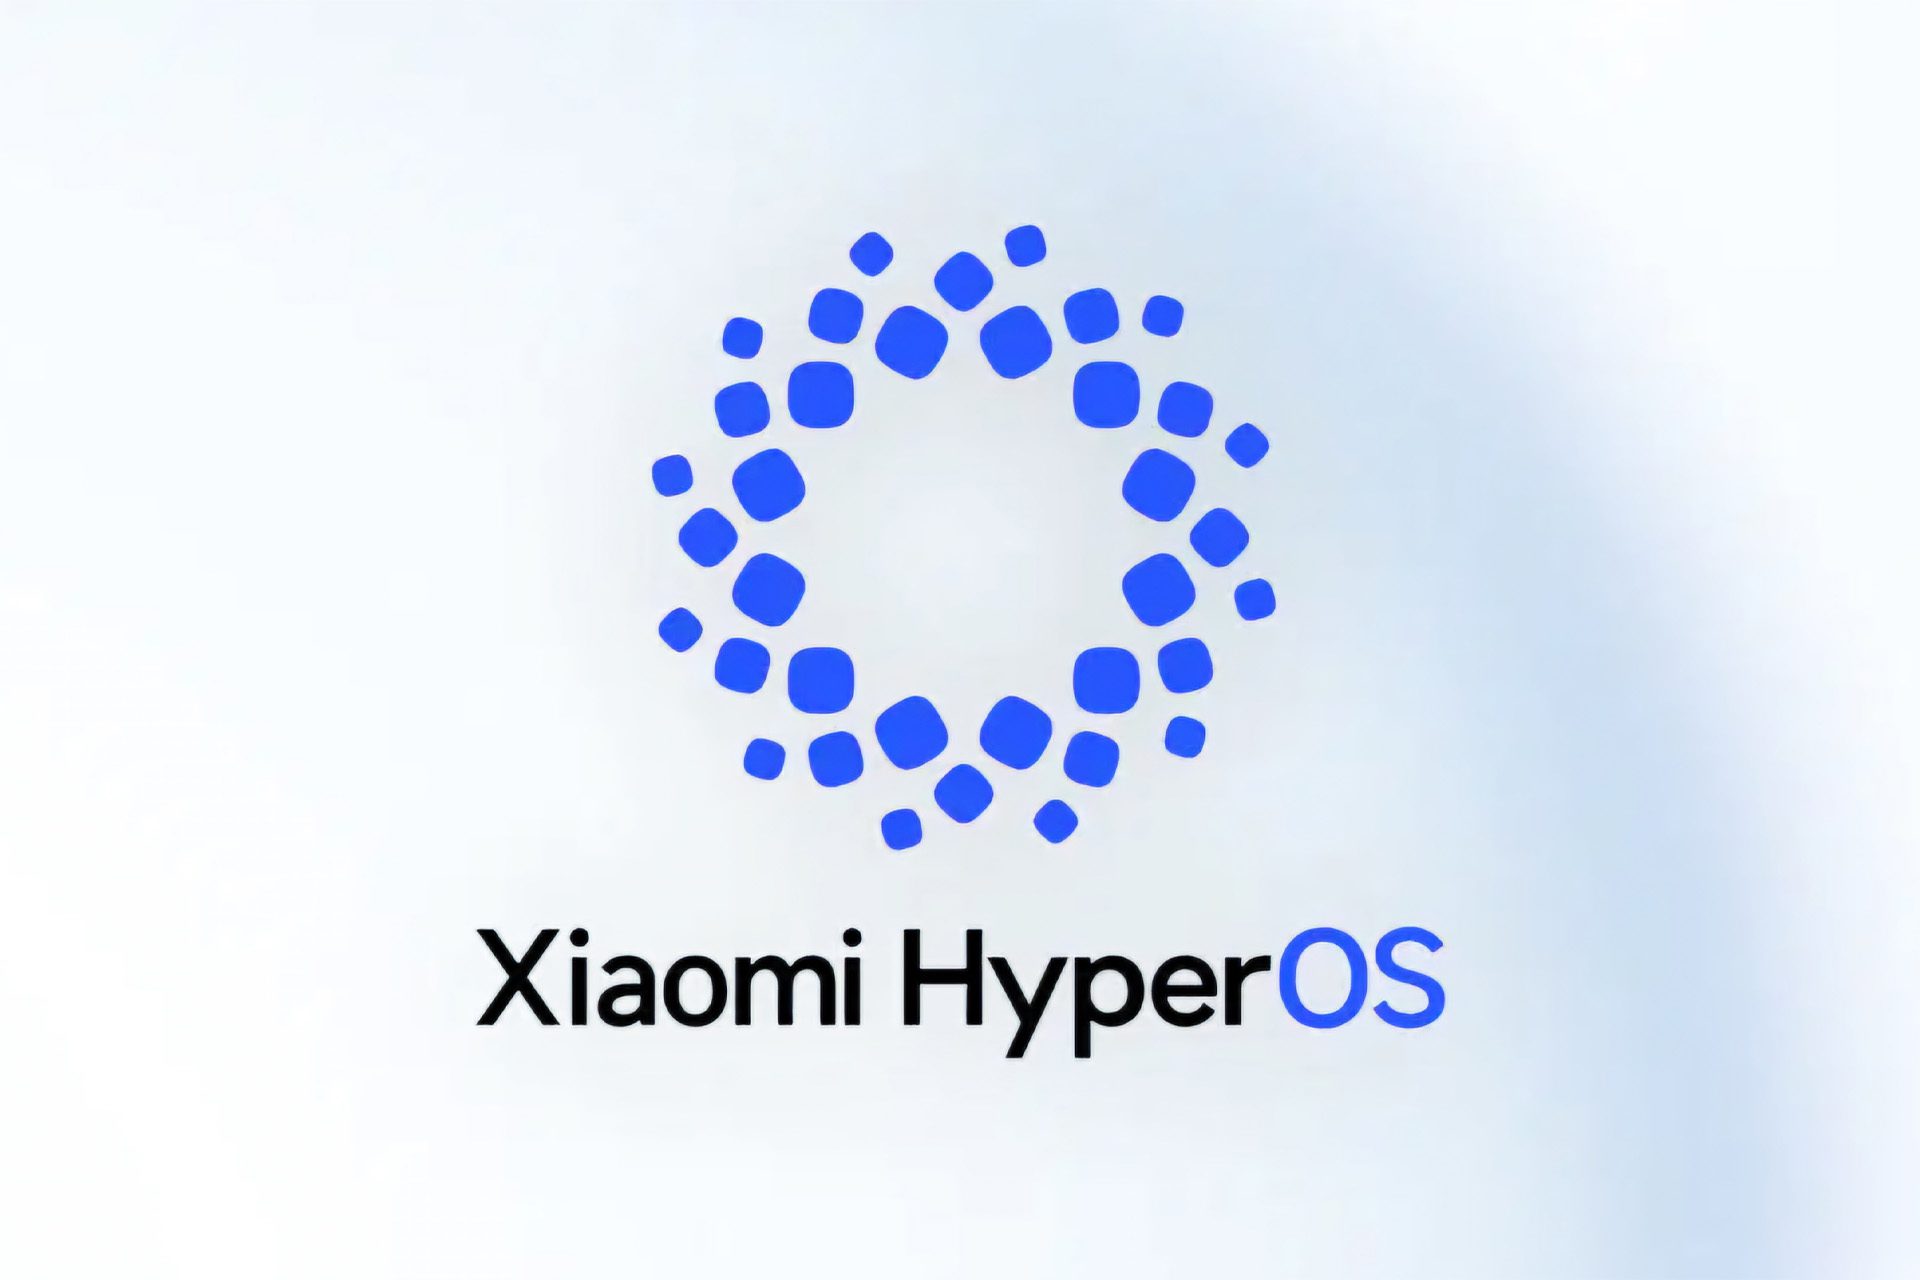 این لوگو رسمی سیستم عامل hyperos است؛ کهکشان شیائومی - آژانس مدیا و مارکتینگ ردی استودیو